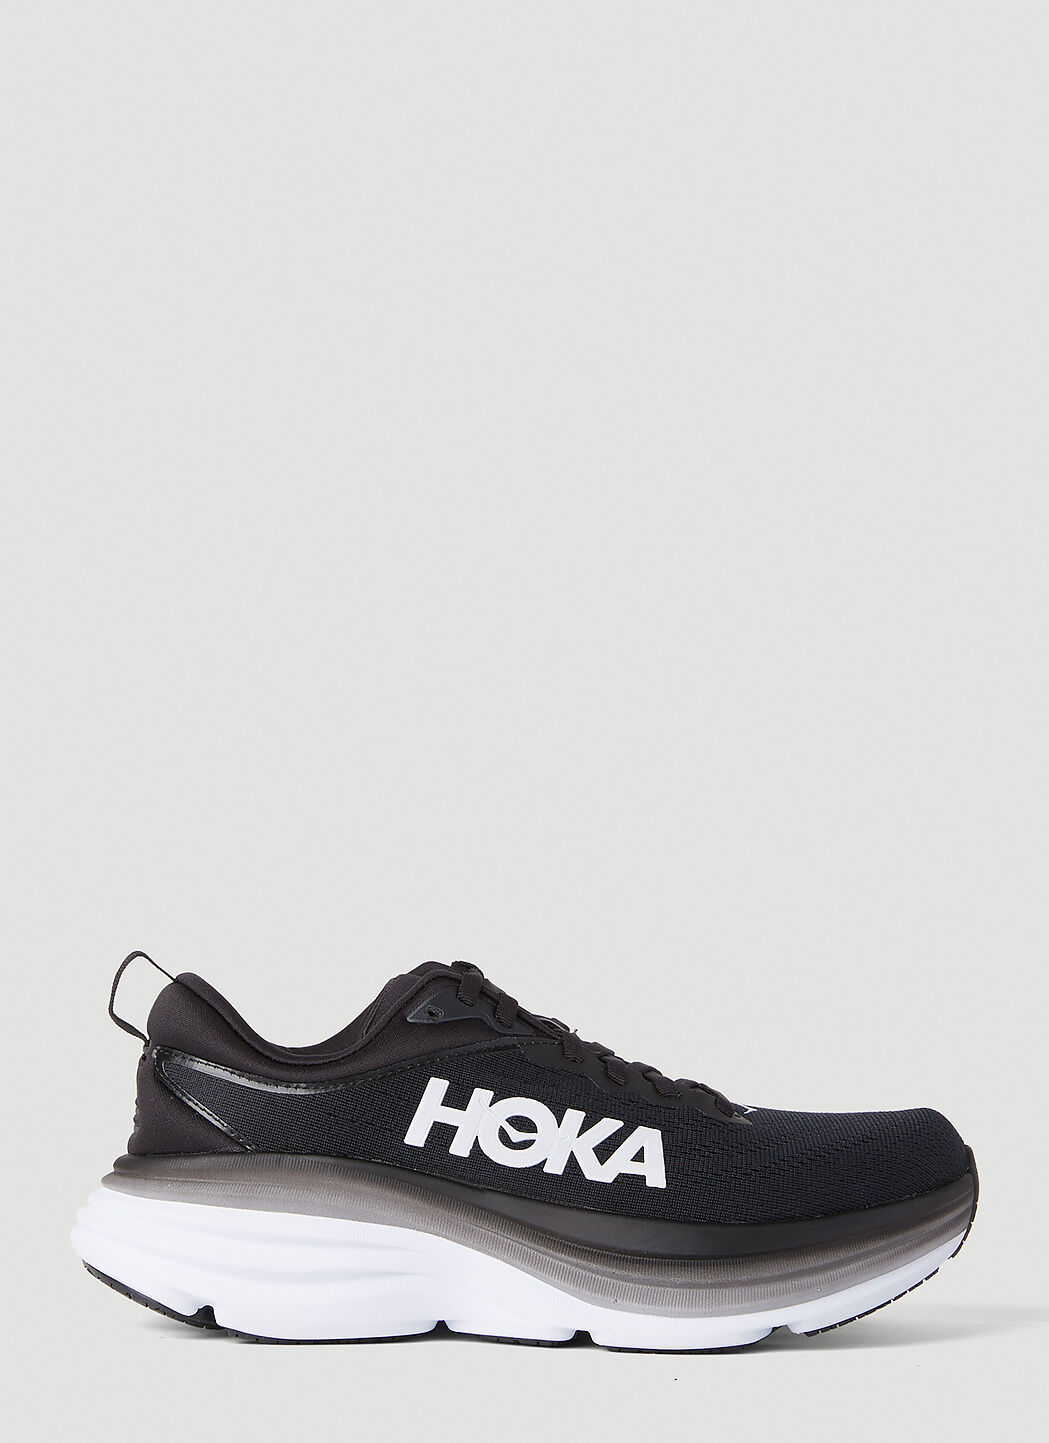 HOKA Bondi 8 运动鞋 粉色 hok0356010